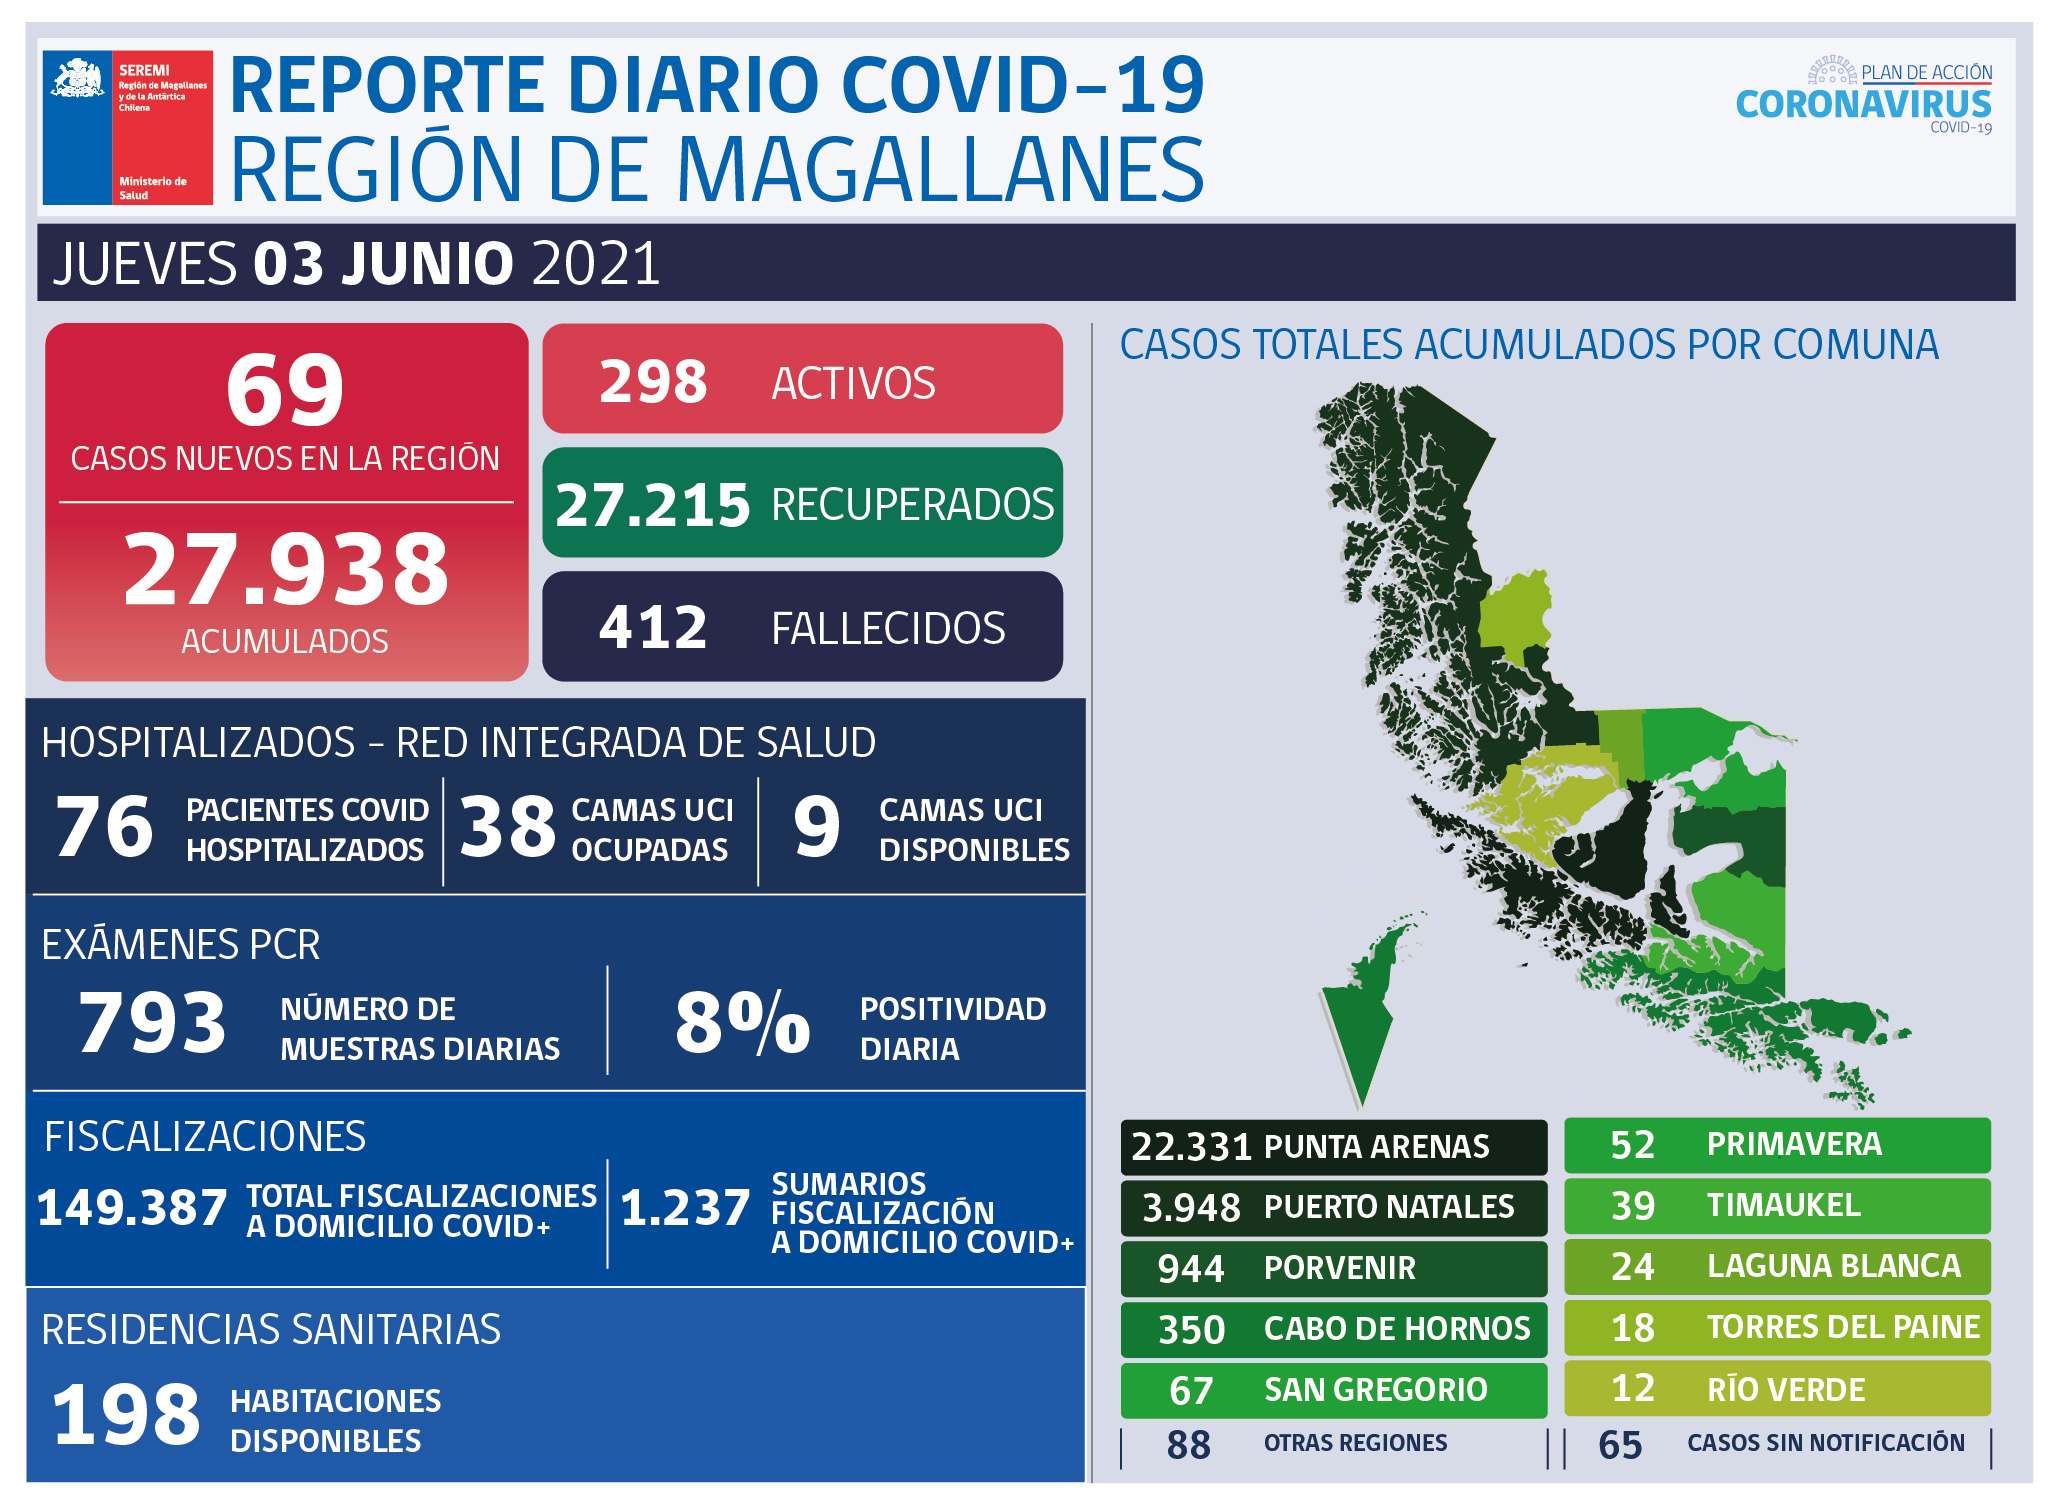 69 nuevos casos covid19 se registran este jueves 3 de junio en Magallanes